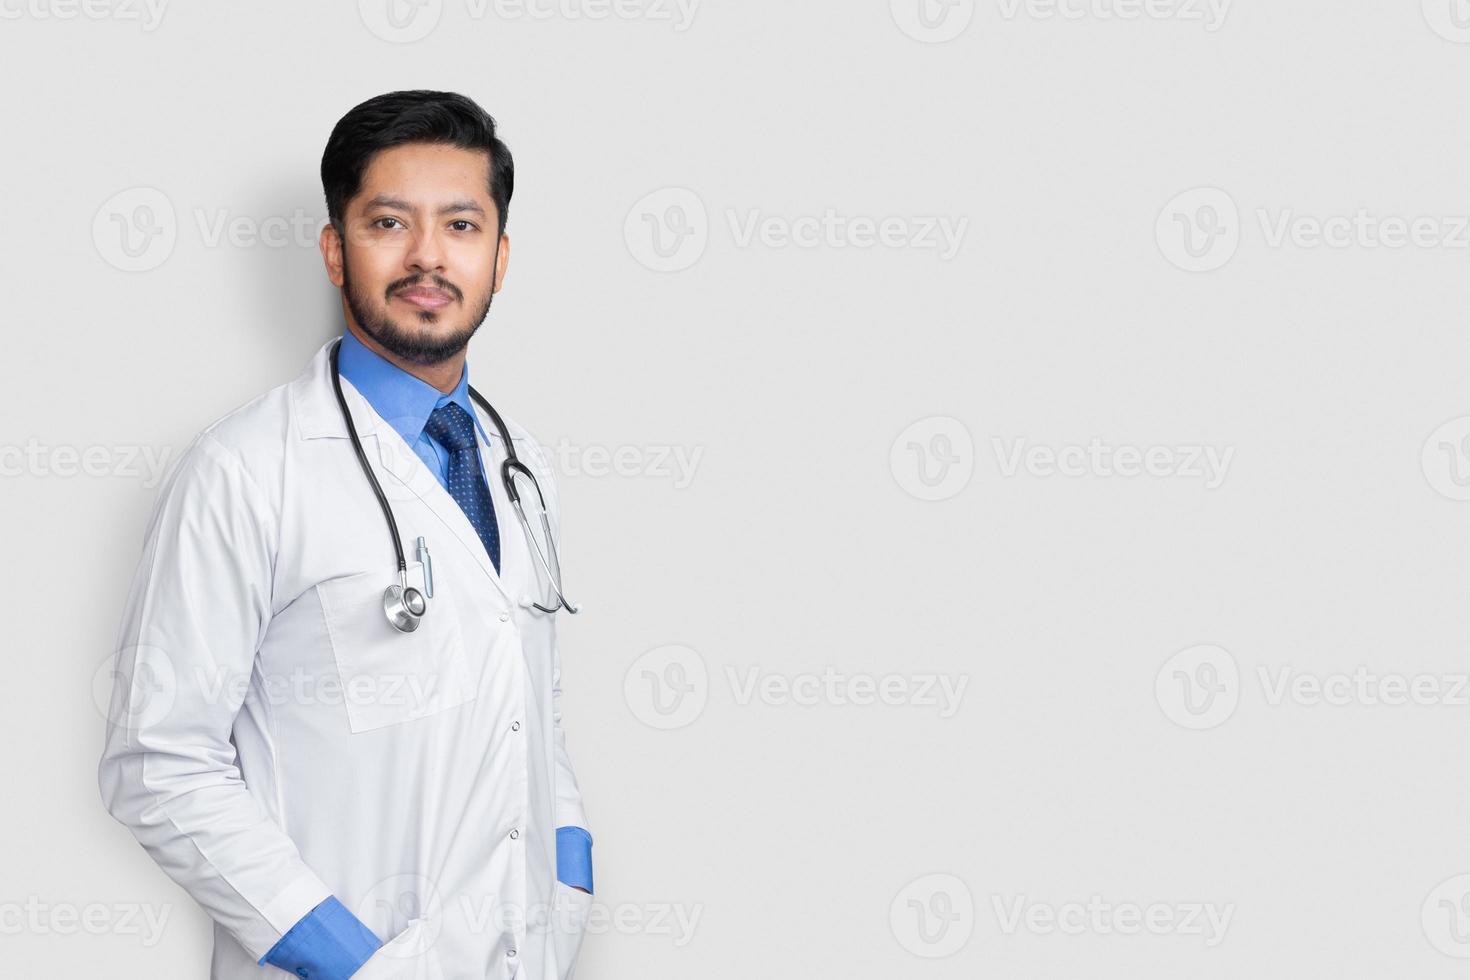 mannelijke arts portret met stethoscoop en arm in jas geïsoleerd op een witte achtergrond. zorgverzekeringsconcept. foto